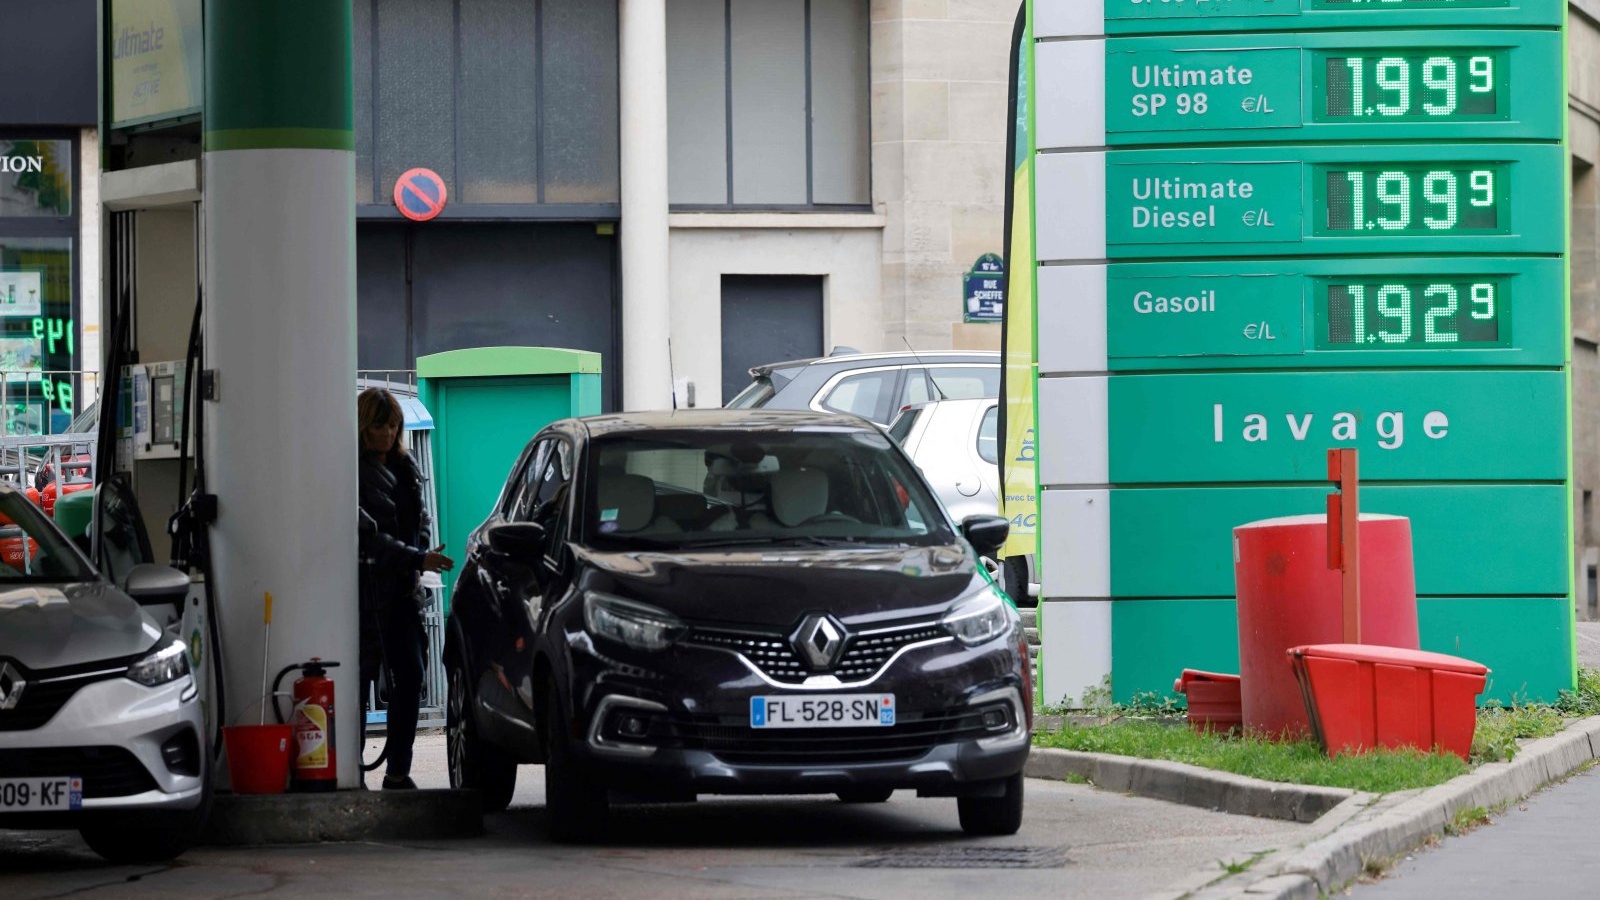 محطة وقود في باريس ارتفعت فيها أسعار الوقود إلى ما يقرب من 2 يورو للتر الواحد وسط ارتفاع أسعار الطاقة العالمية مع انتعاش الإقتصادات من آثار وباء فيروس كورونا، باريس، فرنسا. 20 تشرين الأول/أكتوبر 2021.